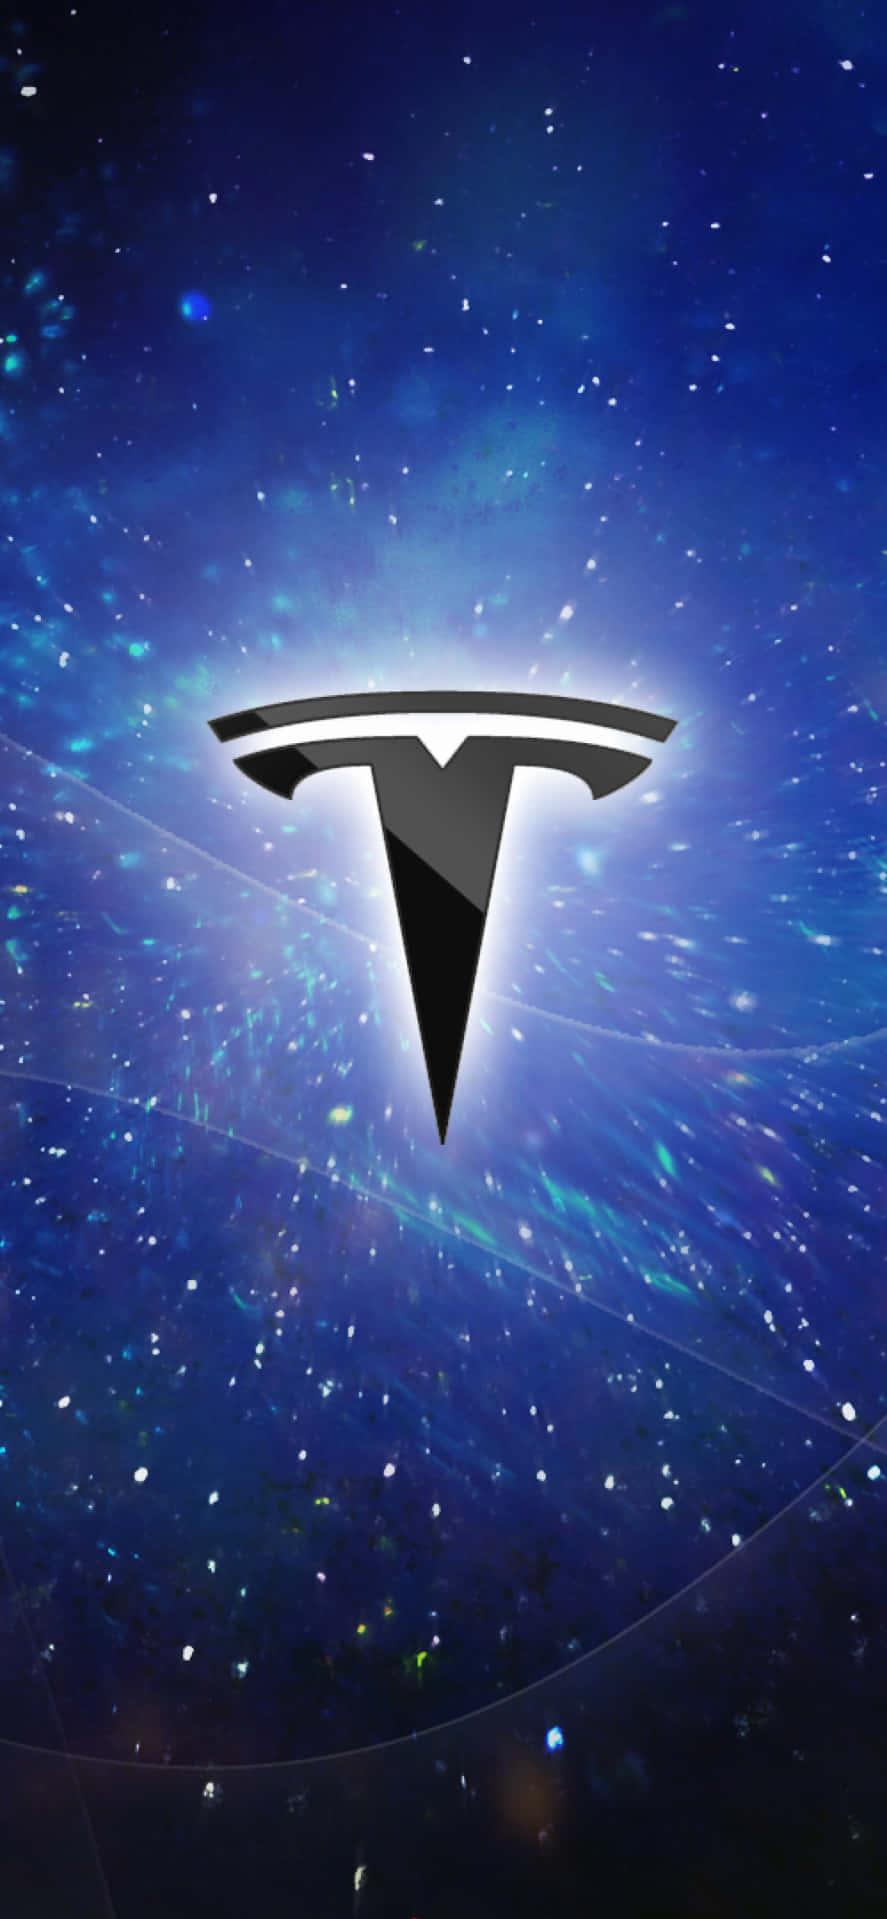 Download Tesla Logo 4k Wallpaper